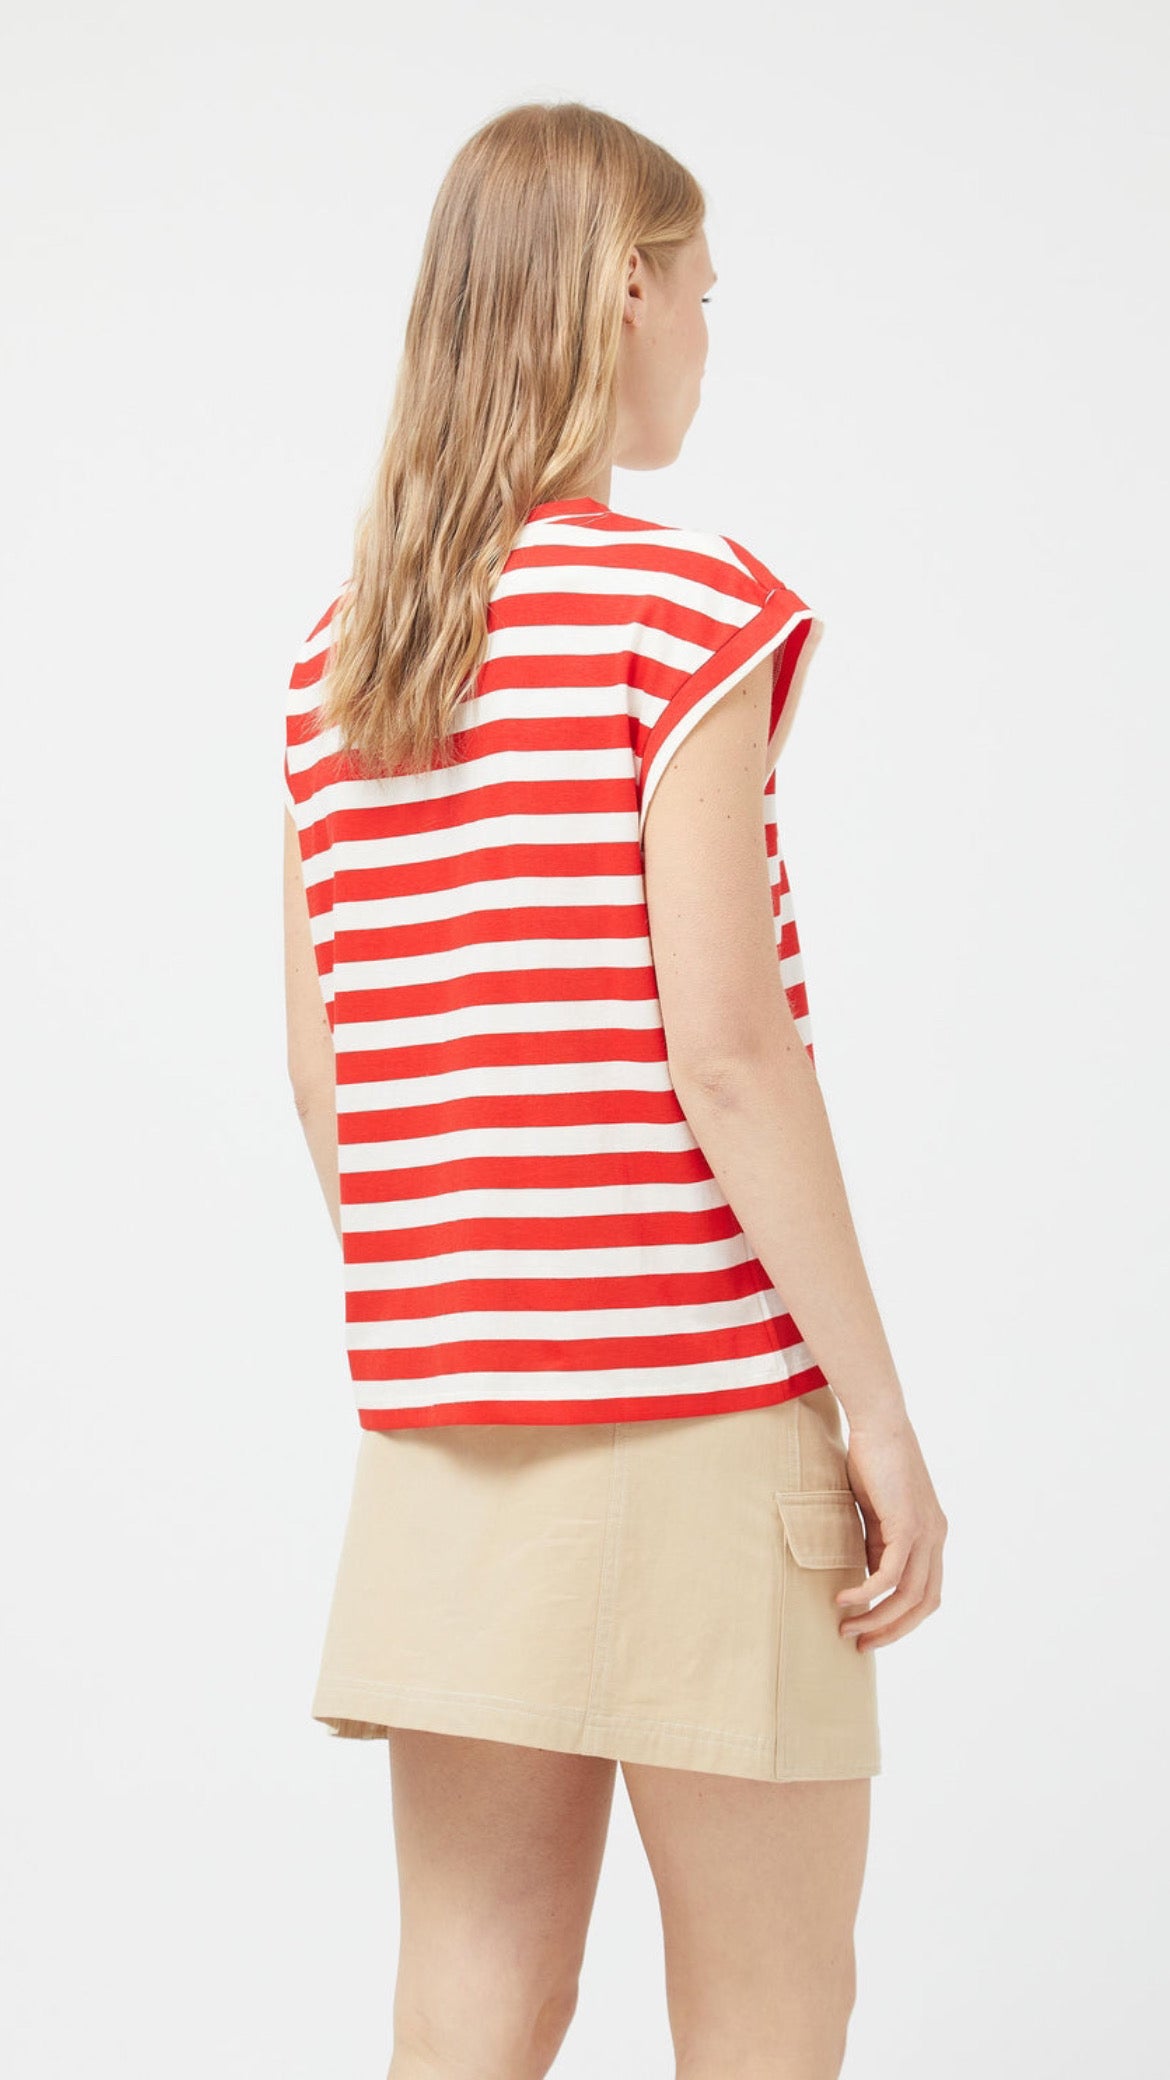 Camiseta manga corta rayas rojas